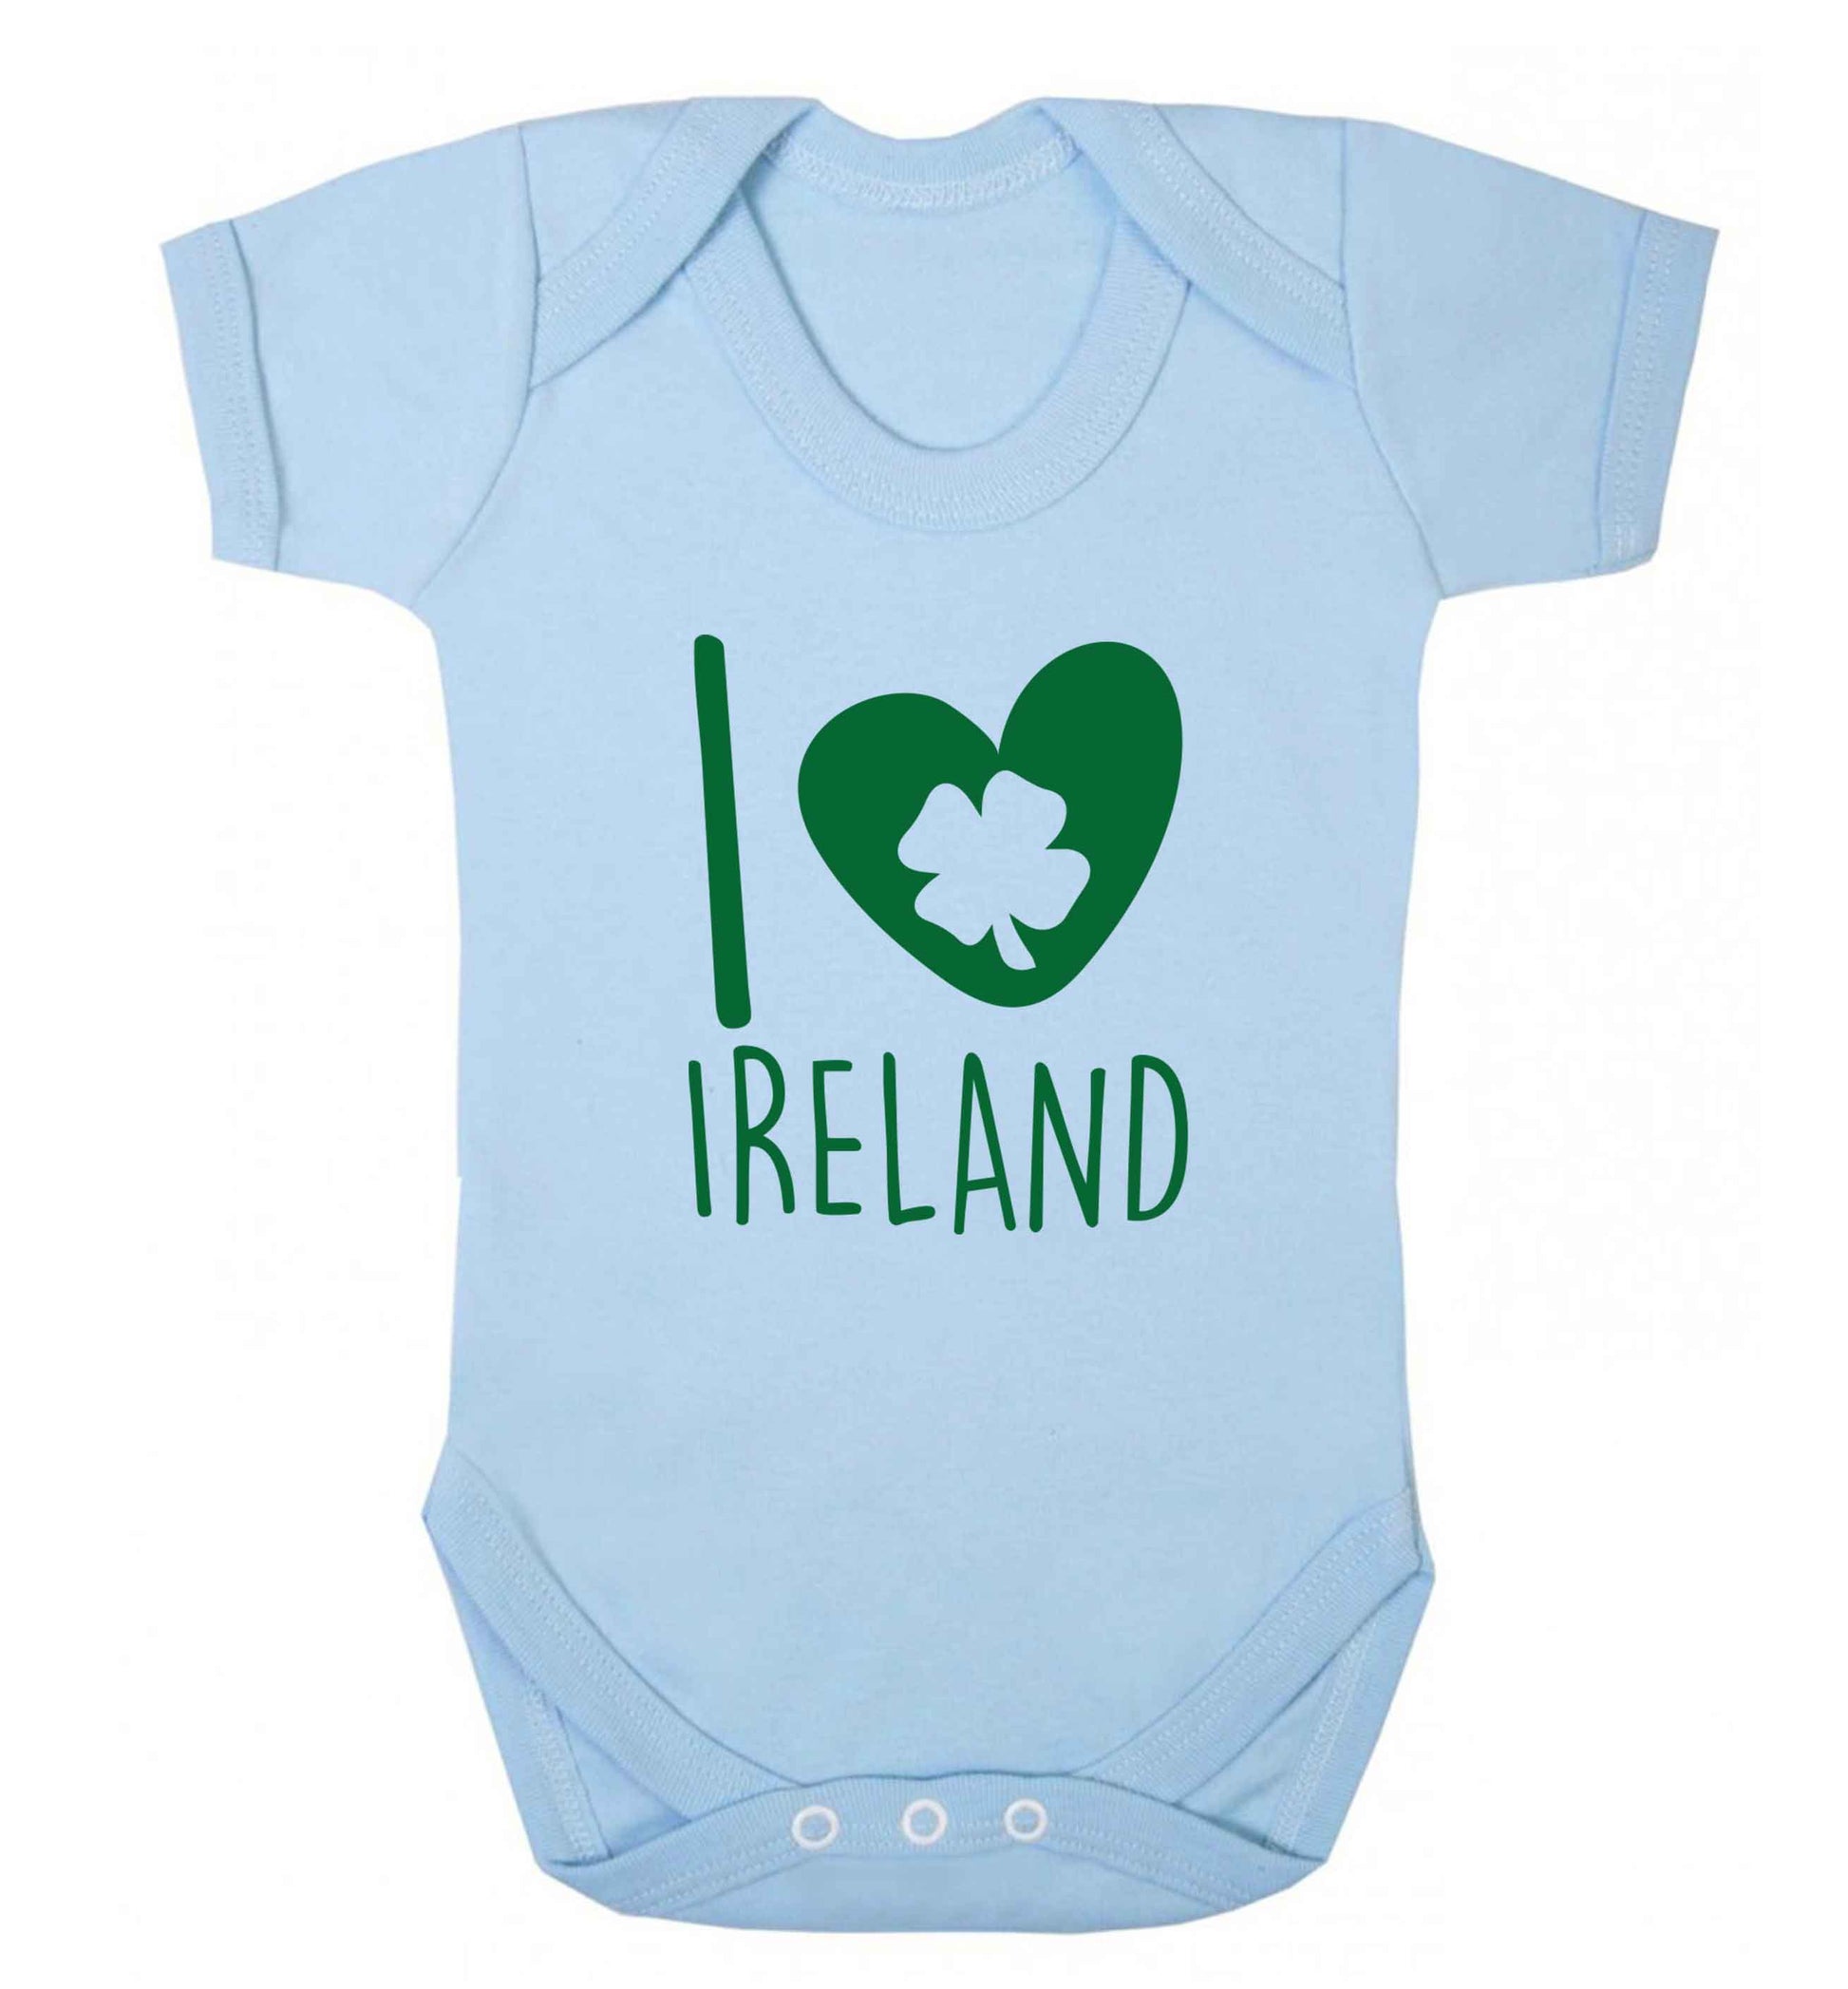 I love Ireland baby vest pale blue 18-24 months